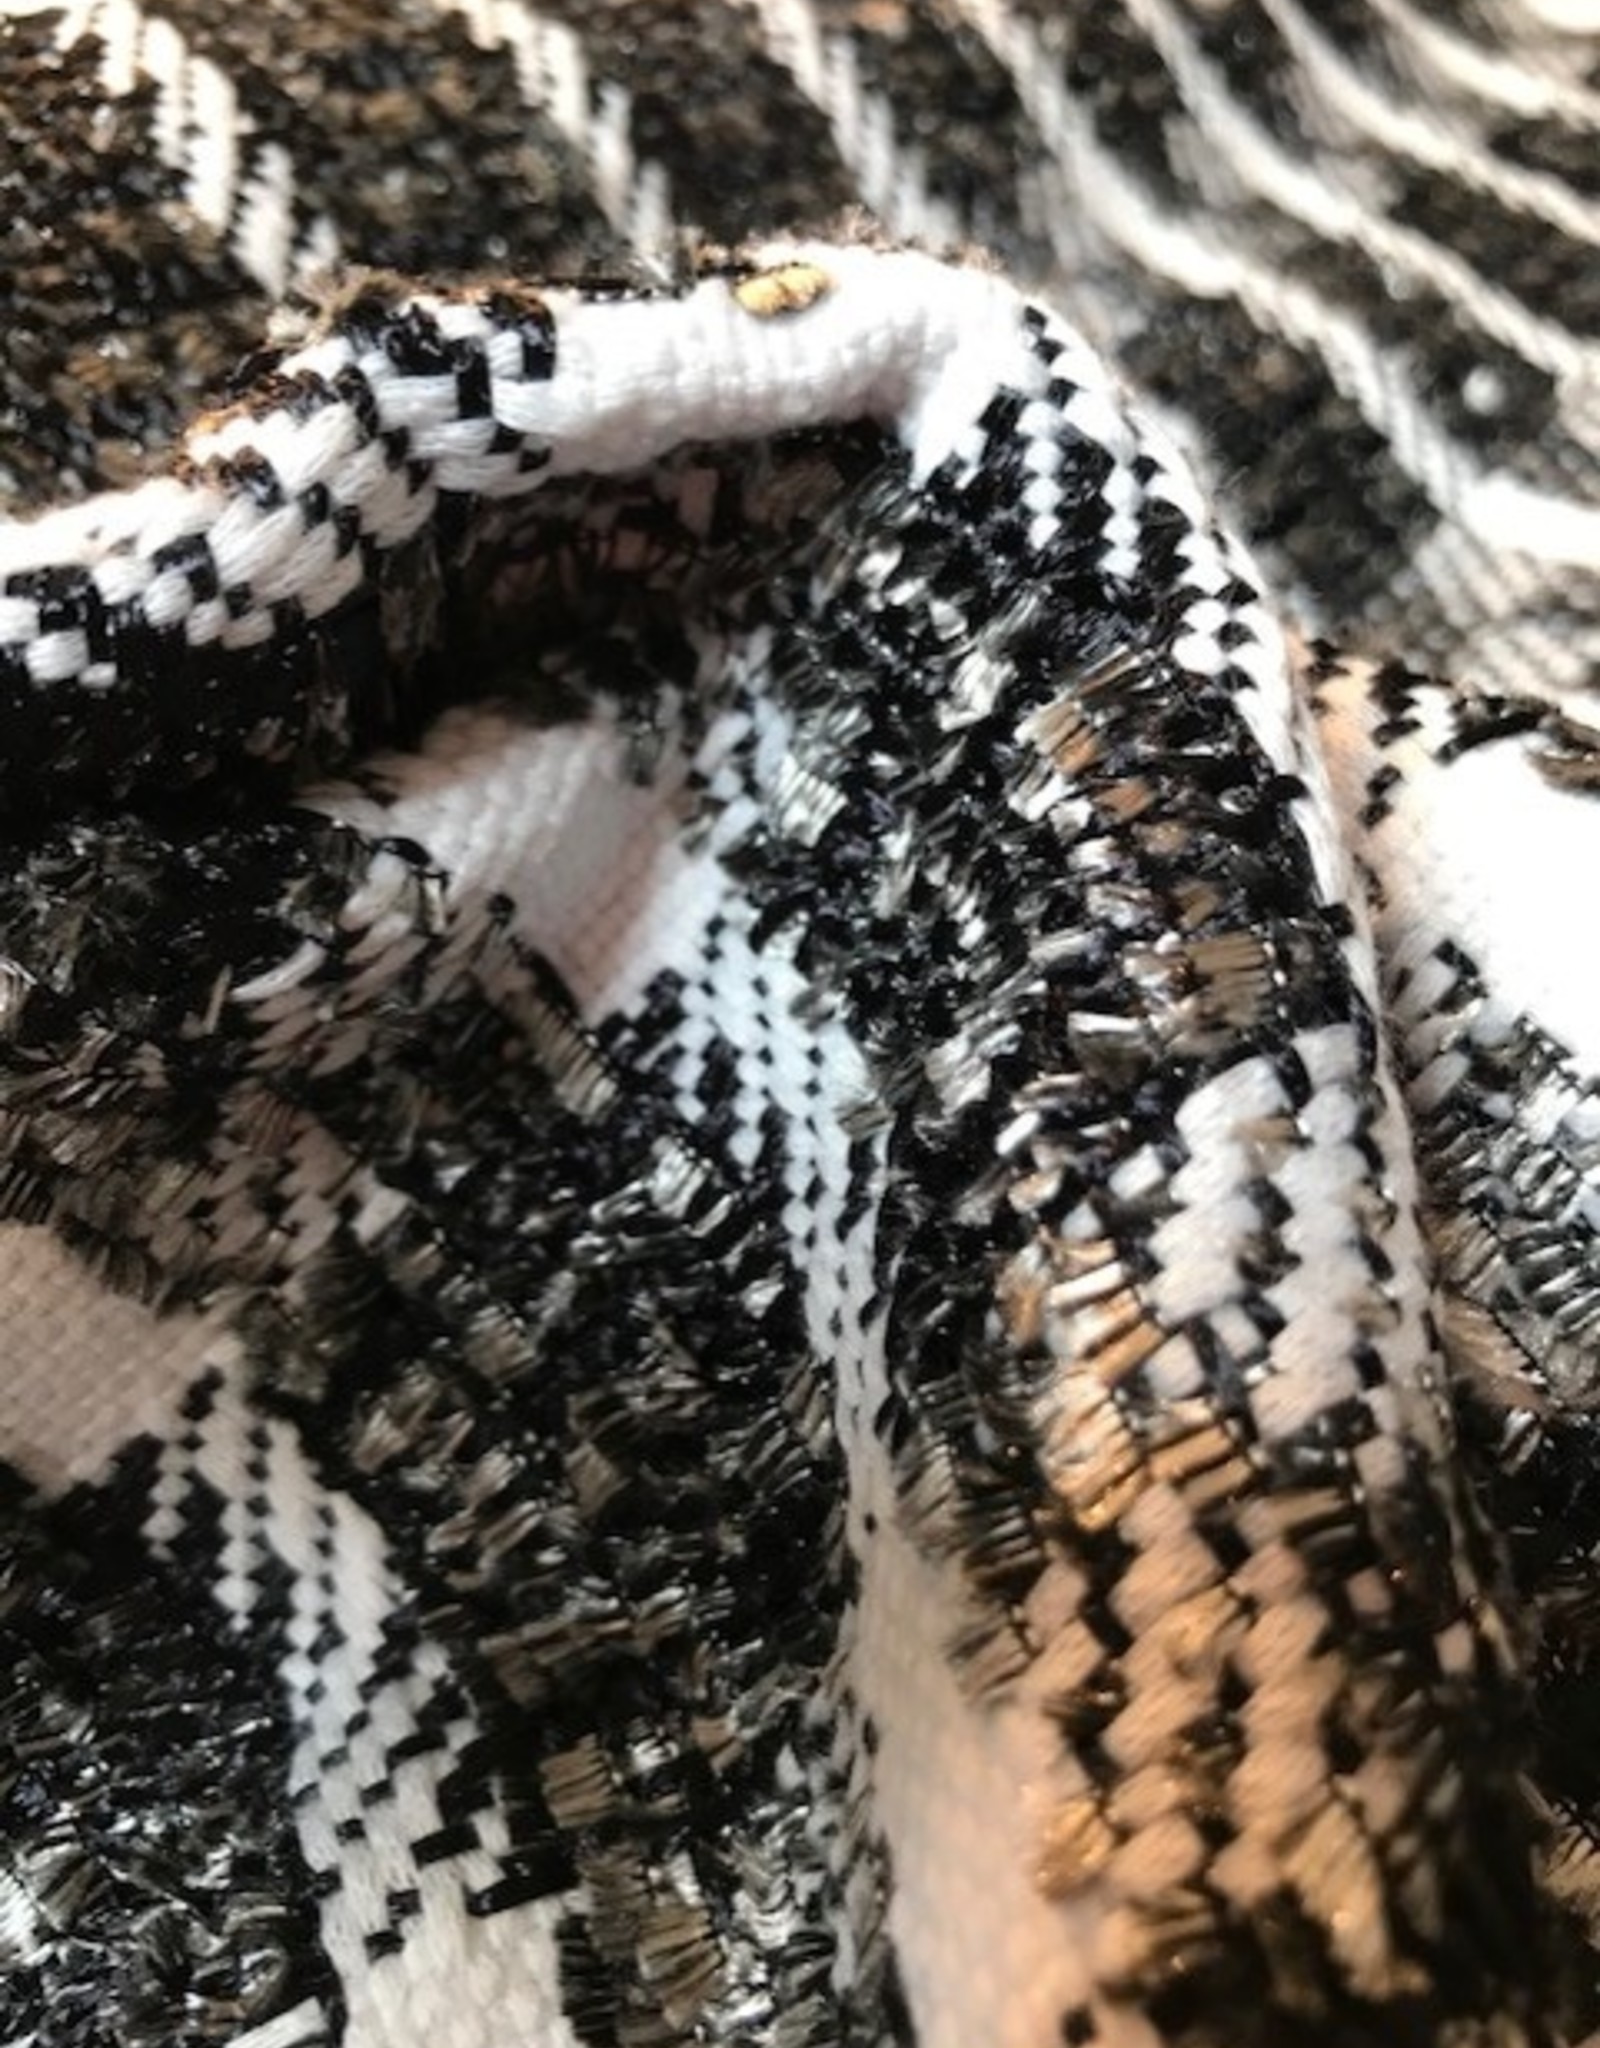 Tweed met pluches ruit/streep patroon zwart&wit